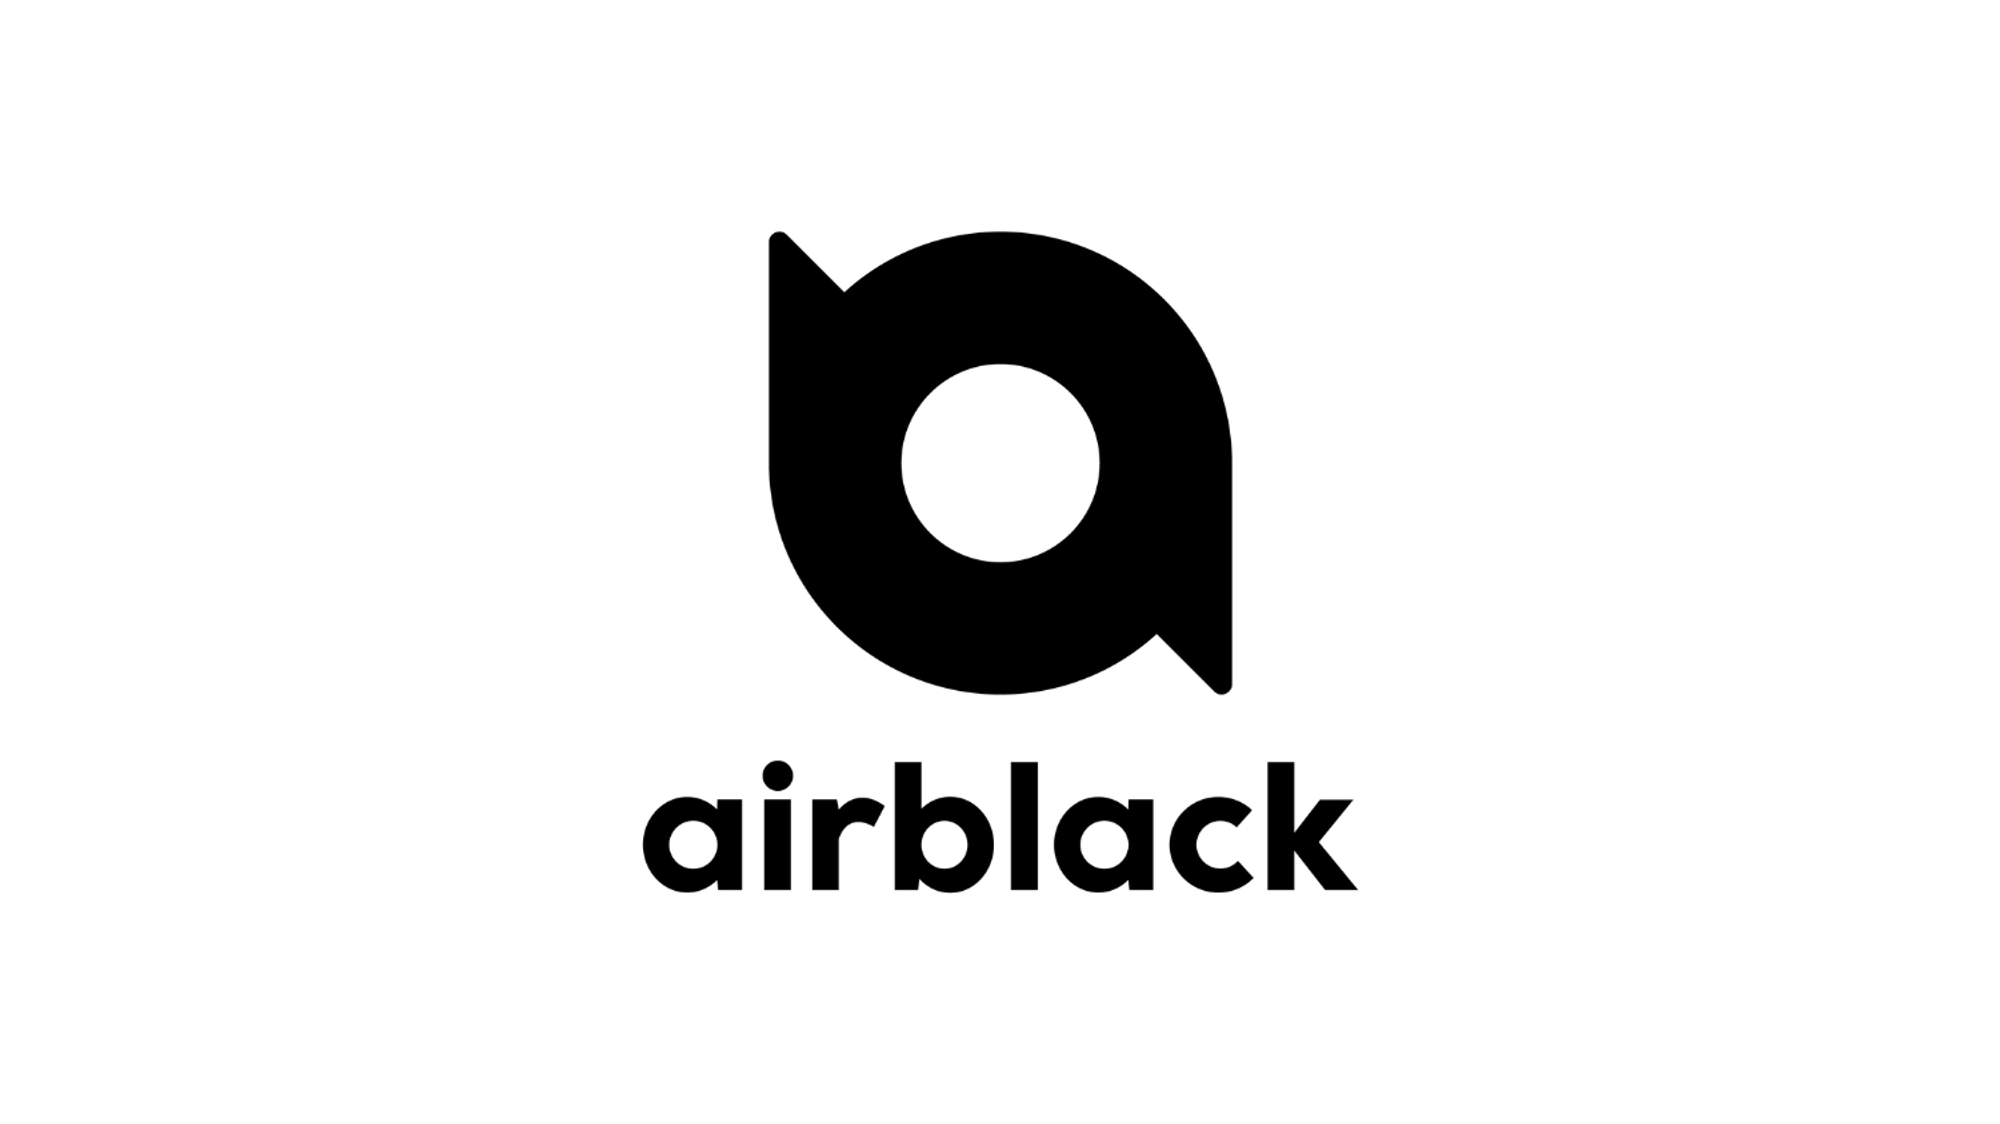 Airblack